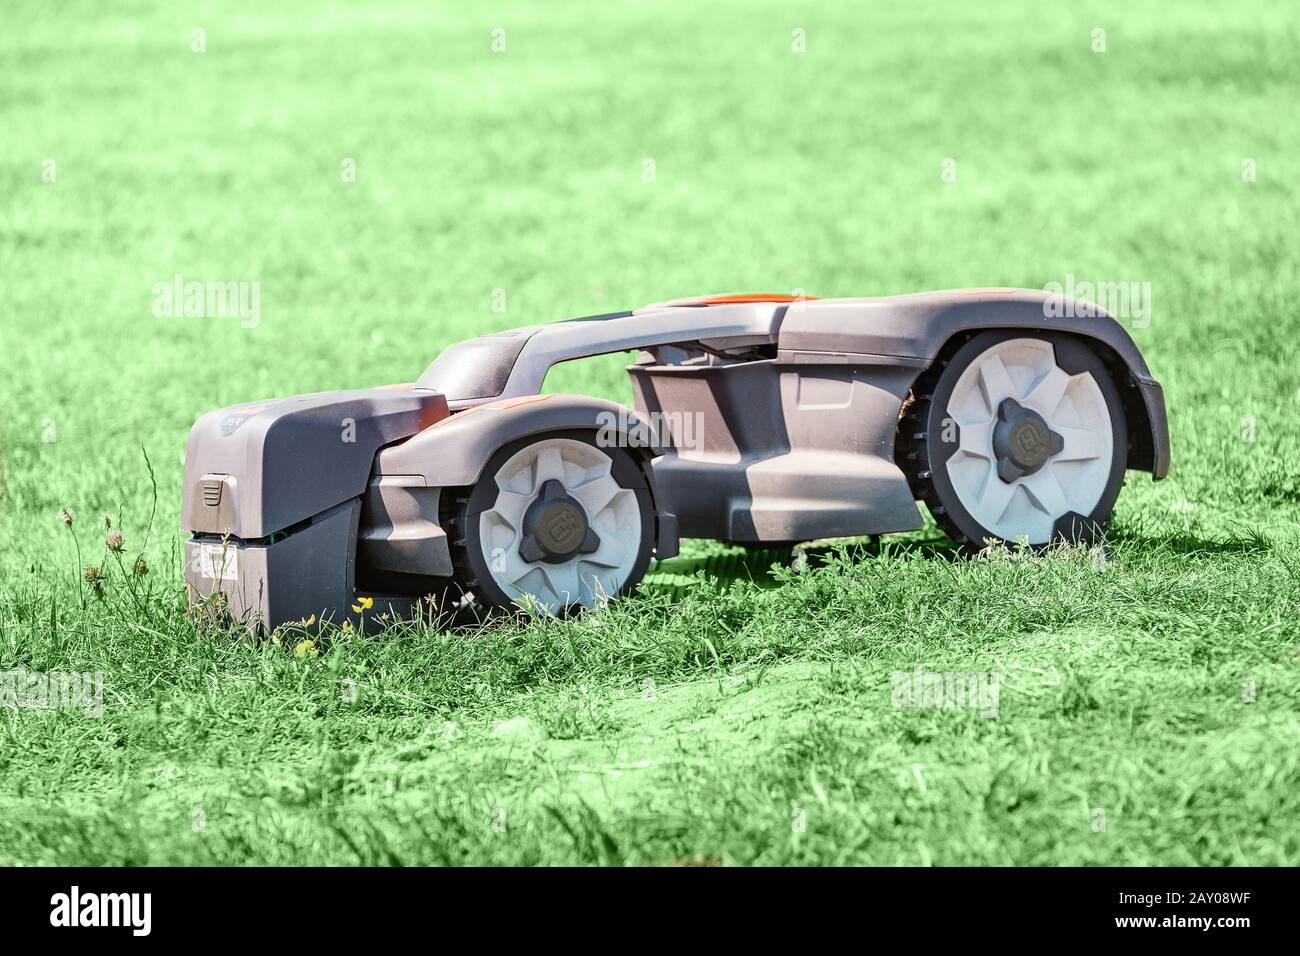 20 juillet 2019, Vienne, Autriche: Tondeuse robot automatique fonctionnant sur une herbe. Banque D'Images